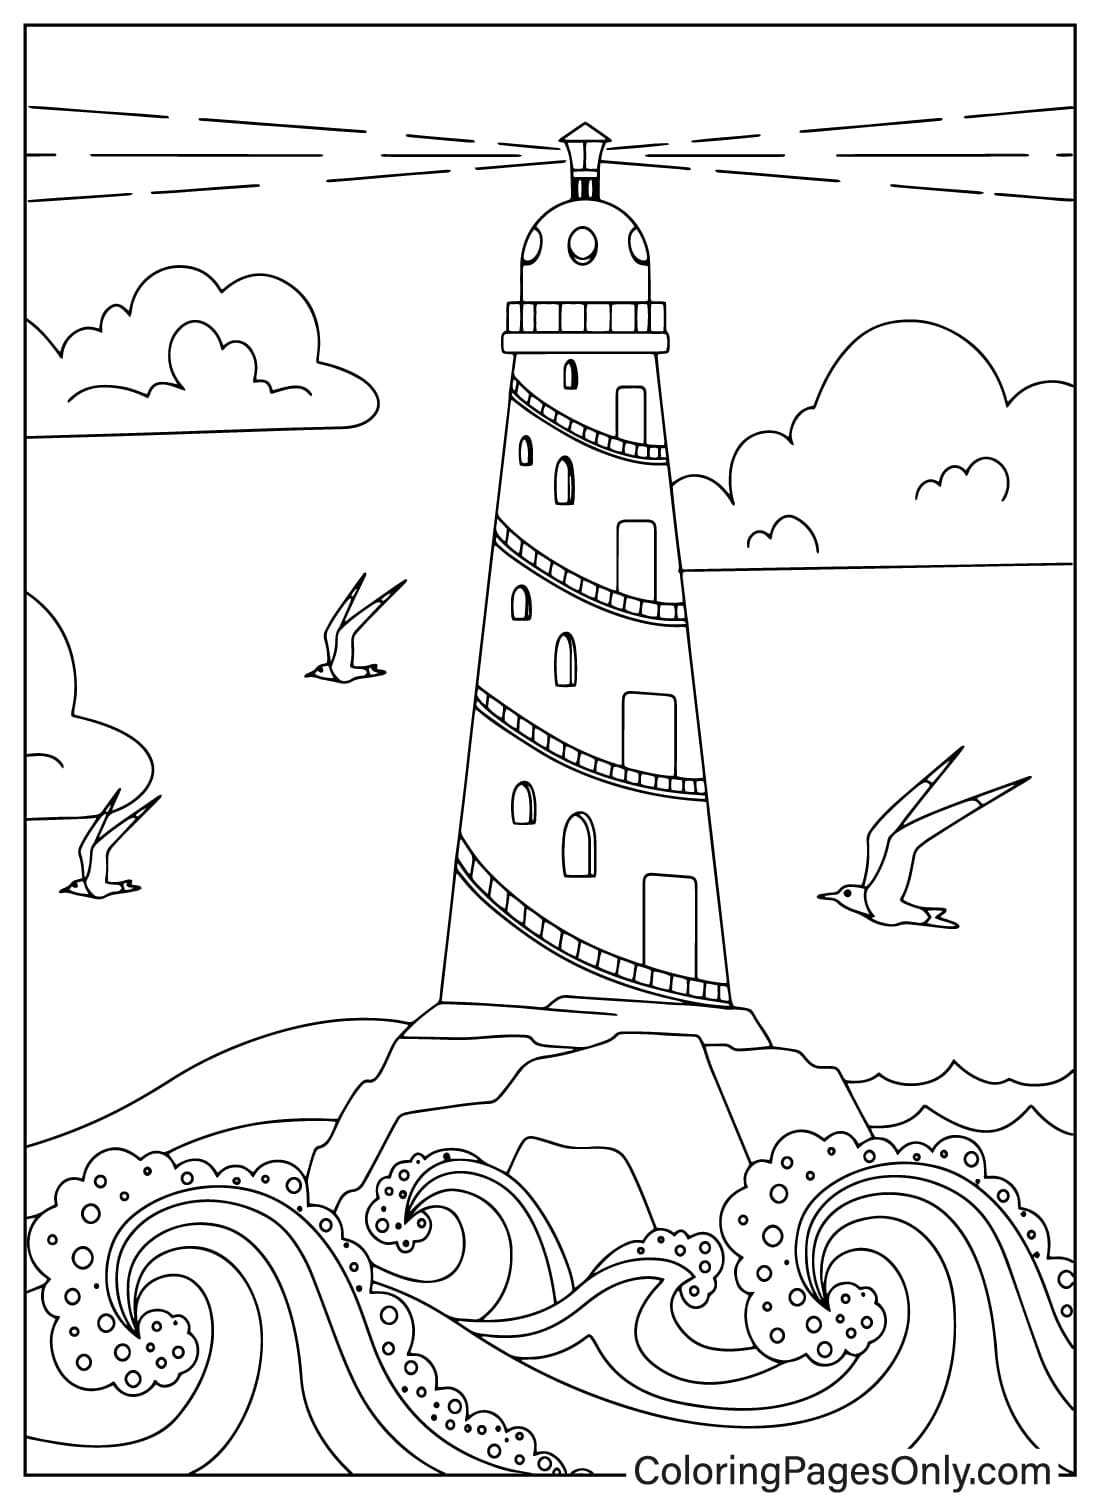 Рисование страницы раскраски маяка из маяка